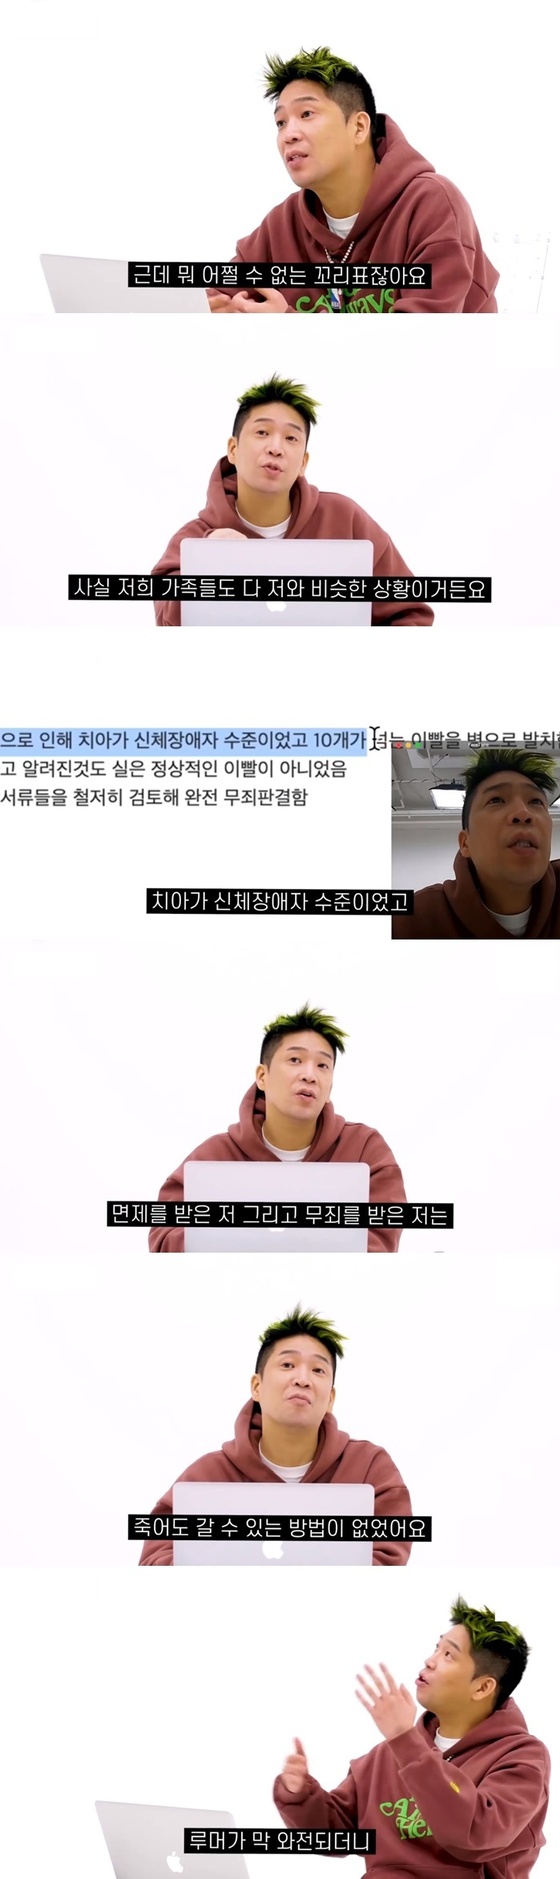 MC 몽은 군복 무를 피하기 위해 모든 논란과 소문을 공개했다 … 원더 케이가 갑자기 영상을 삭제 한 이유는?  (종합)